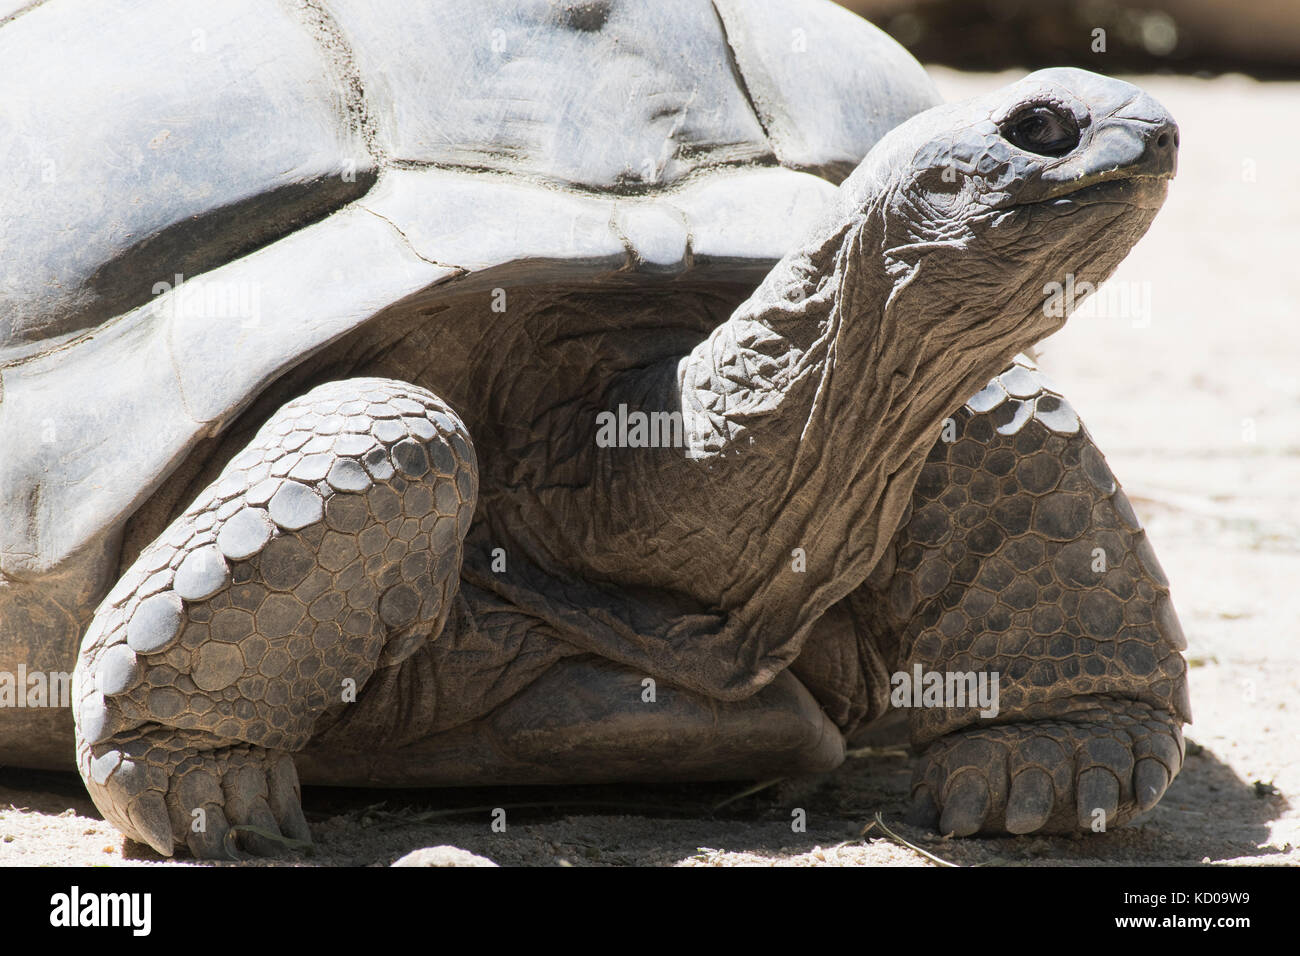 Tortue géante d'Aldabra (aldabrachelys gigantea), Praslin, seychelles Banque D'Images